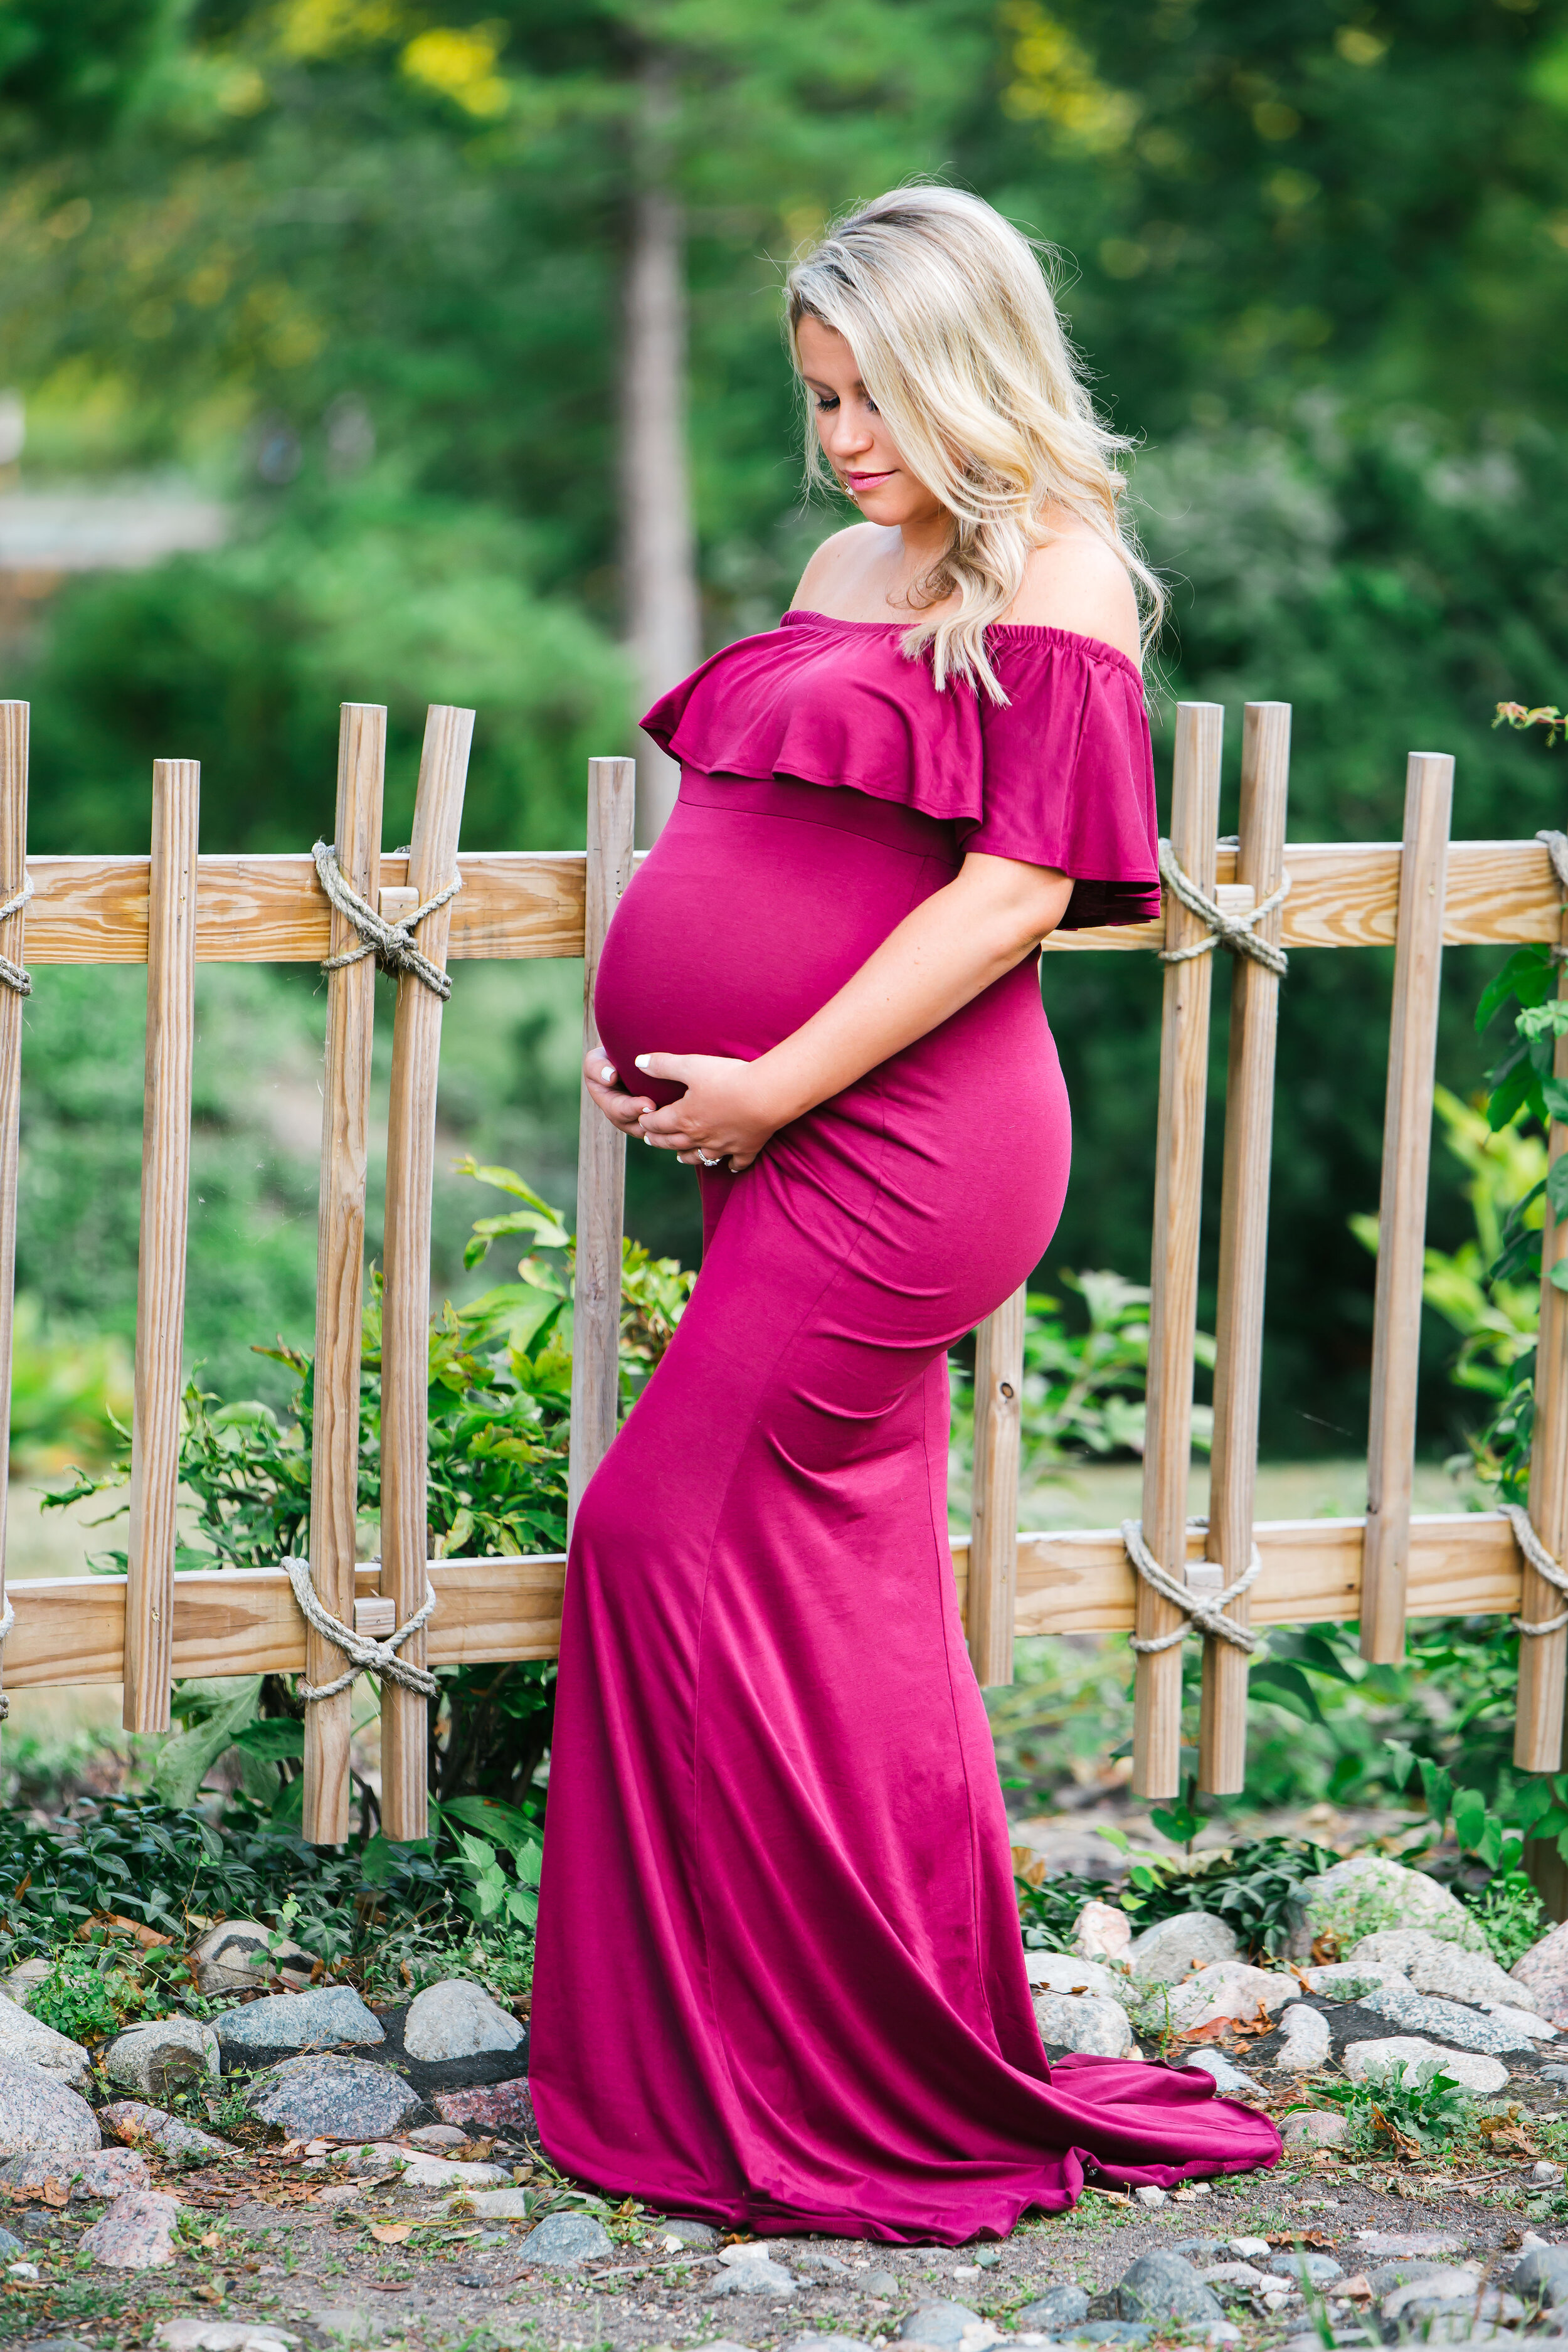 Pregnancy Session | Maternity Photo Ideas | Algonquin IL 